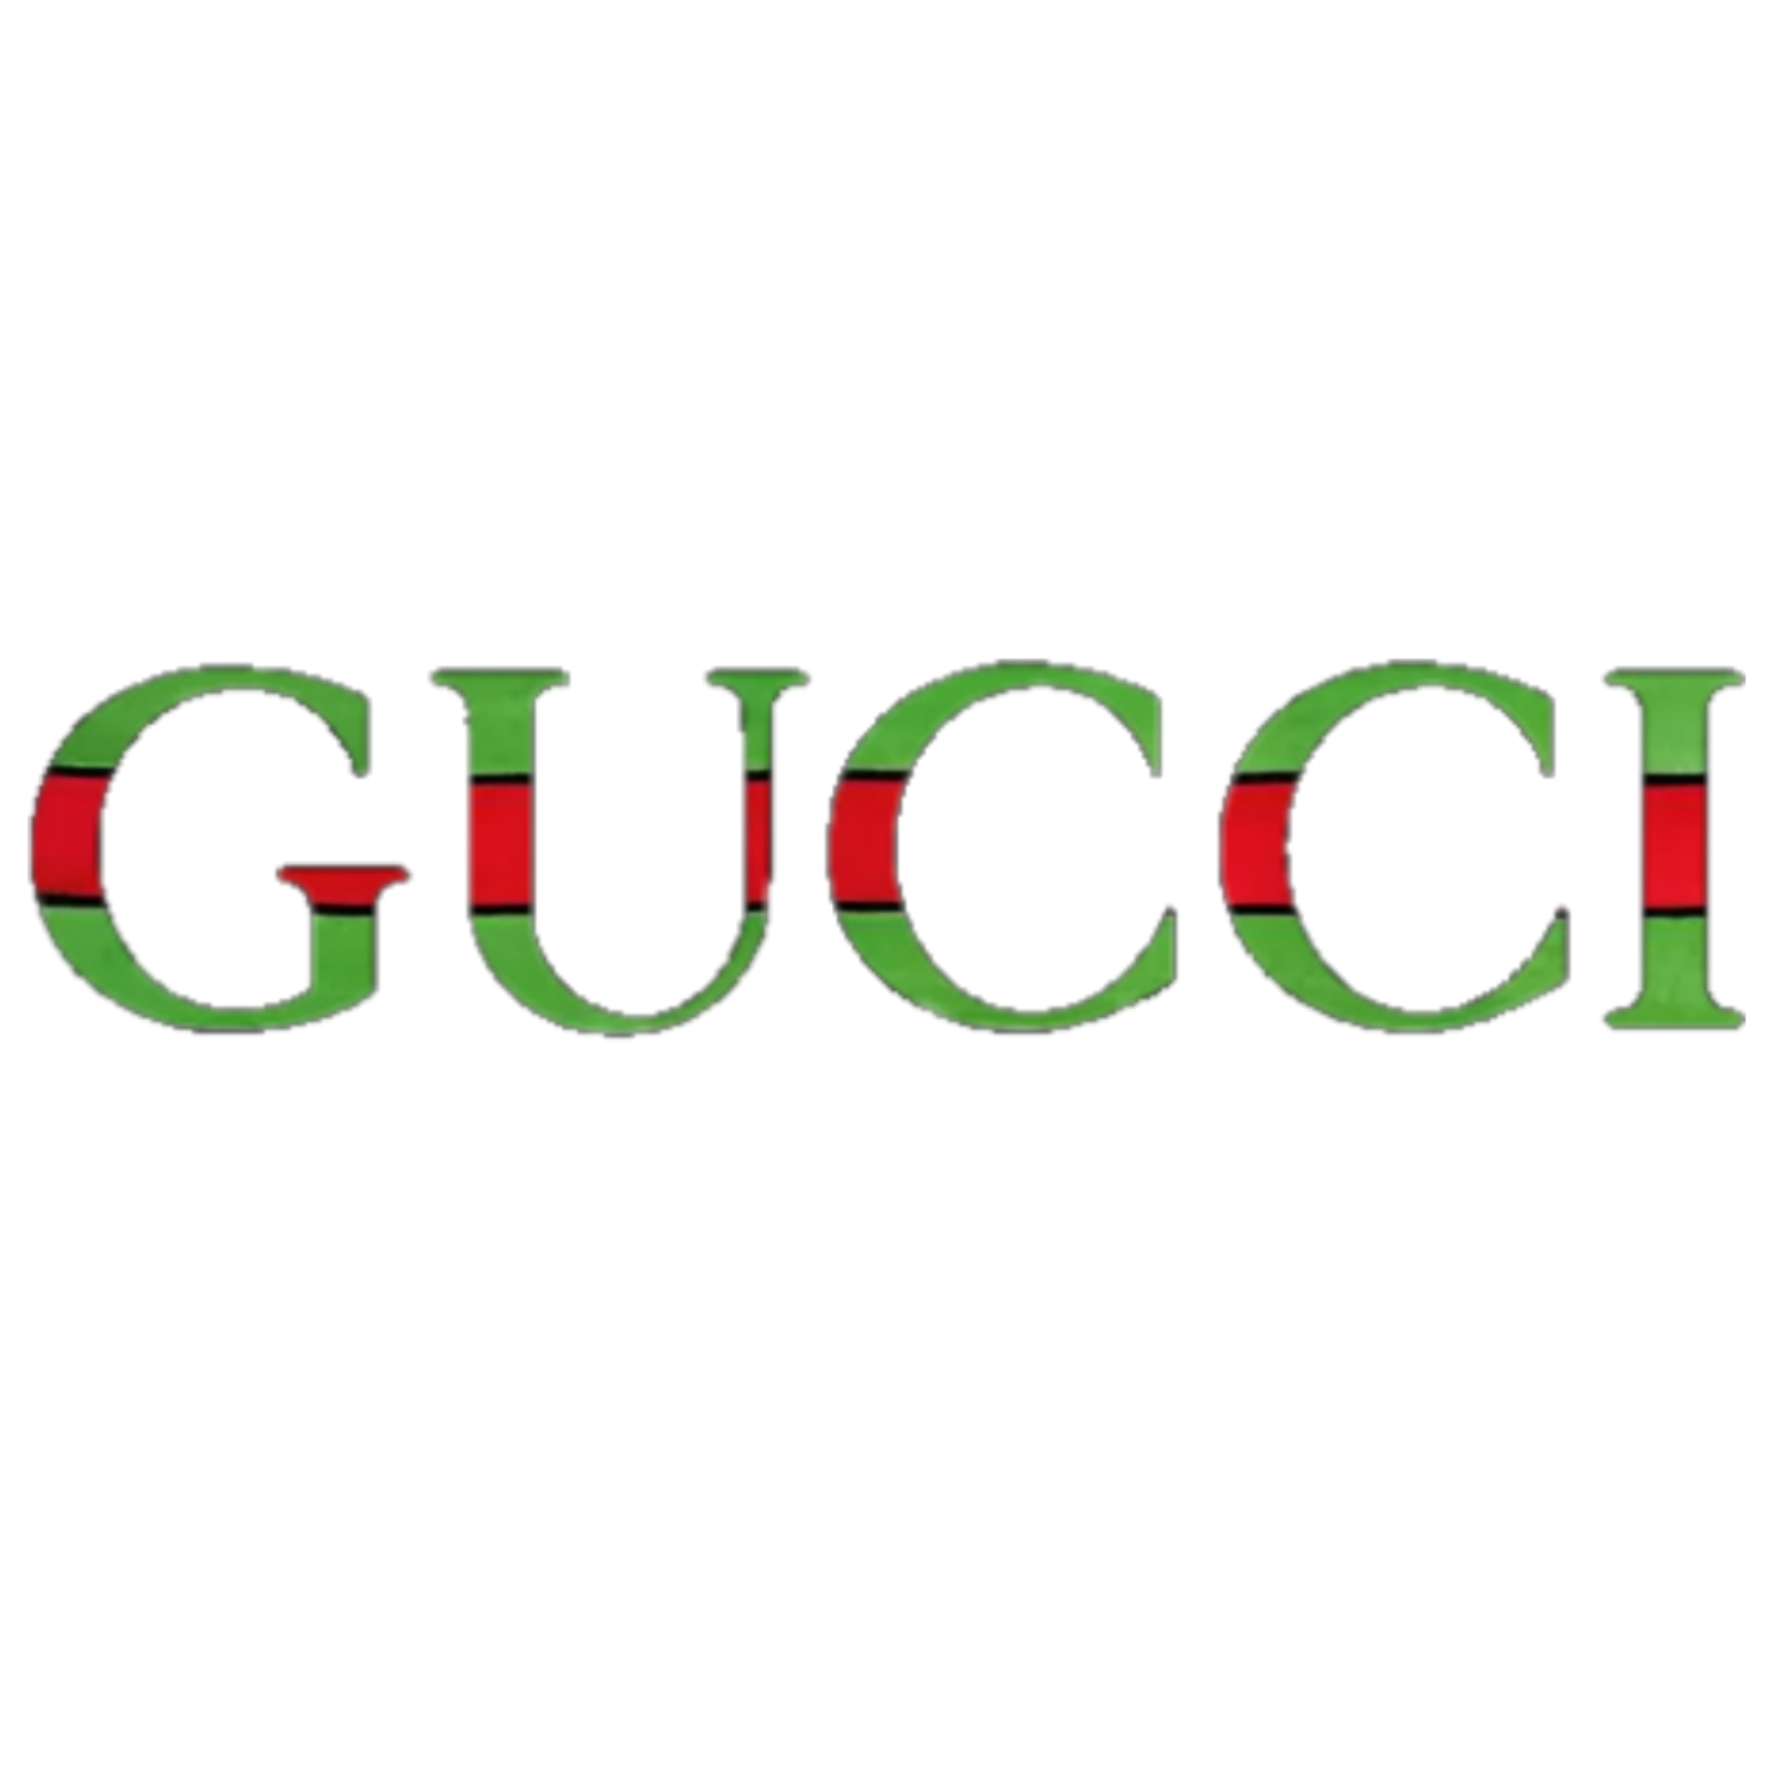 gucci freetoedit #gucci sticker by @historiamistico